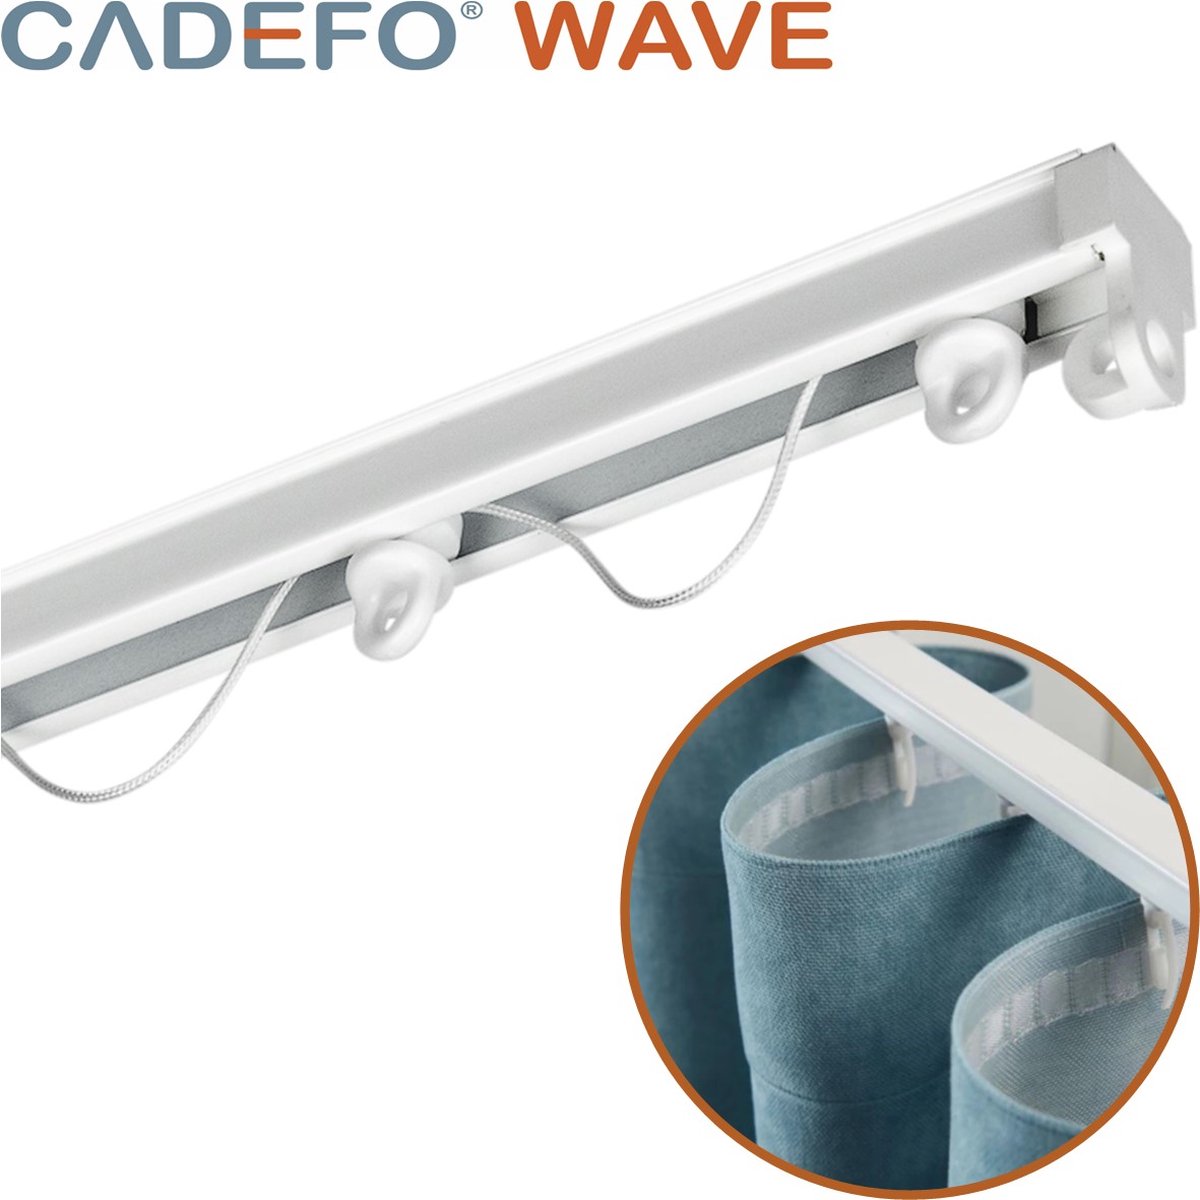 CADEFO WAVE (451 - 500 cm) Gordijnrails - Compleet op maat! - UIT 1 STUK - Leverbaar tot 6 meter - Plafondbevestiging - Lengte 475 cm